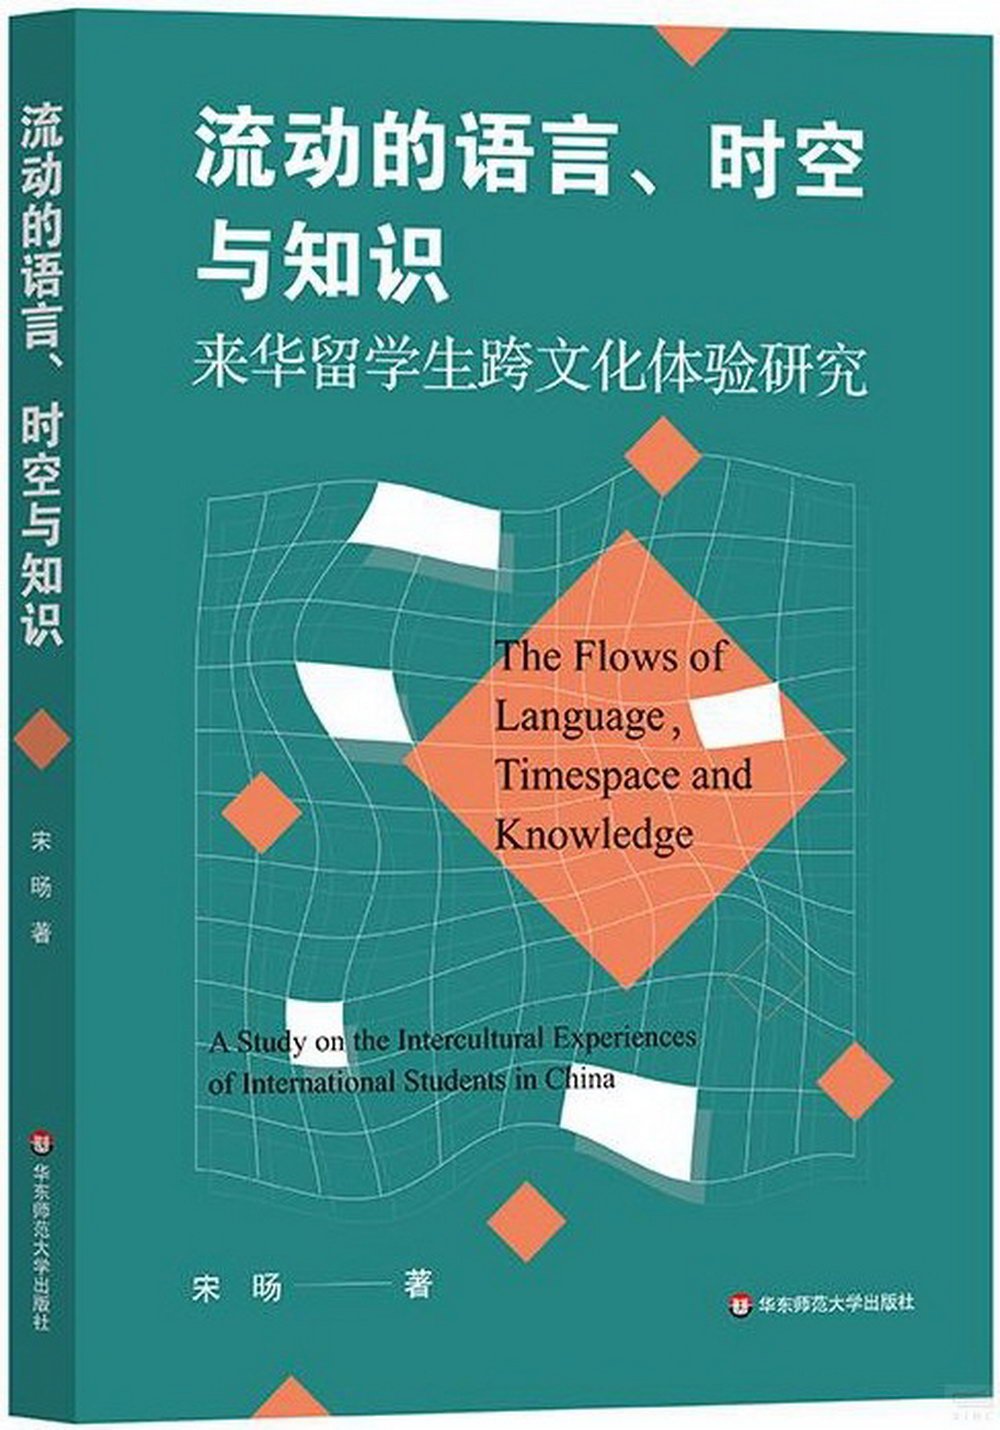 流動的語言、時空與知識：來華留學生跨文化體驗研究